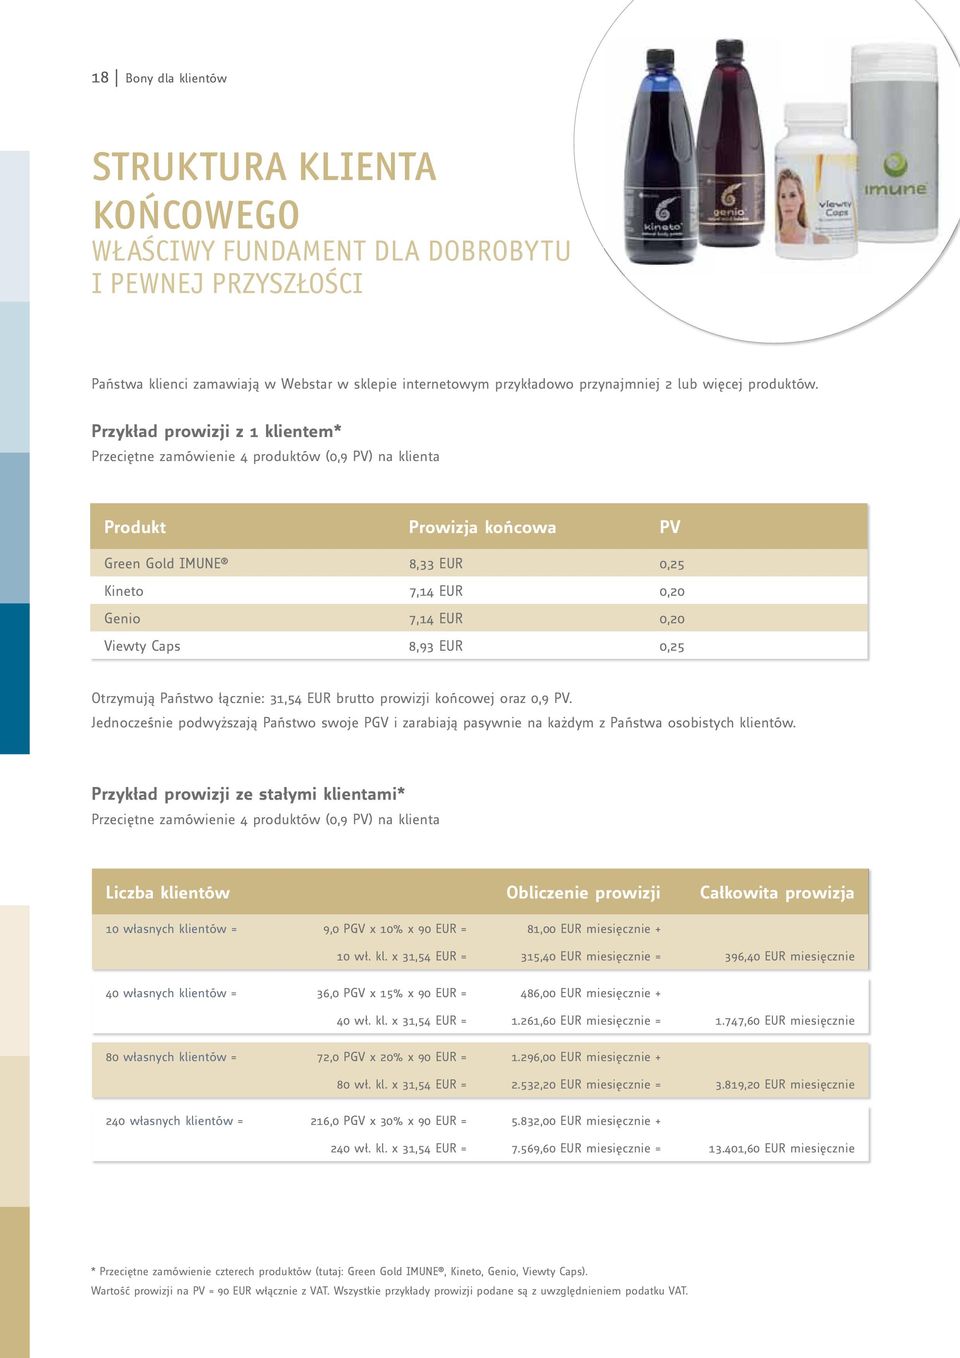 Przykład prowizji z 1 klientem* Przeciętne zamówienie 4 produktów (0,9 PV) na klienta Produkt Prowizja końcowa PV Green Gold IMUNE 8,33 EUR 0,25 Kineto 7,14 EUR 0,20 Genio 7,14 EUR 0,20 Viewty Caps